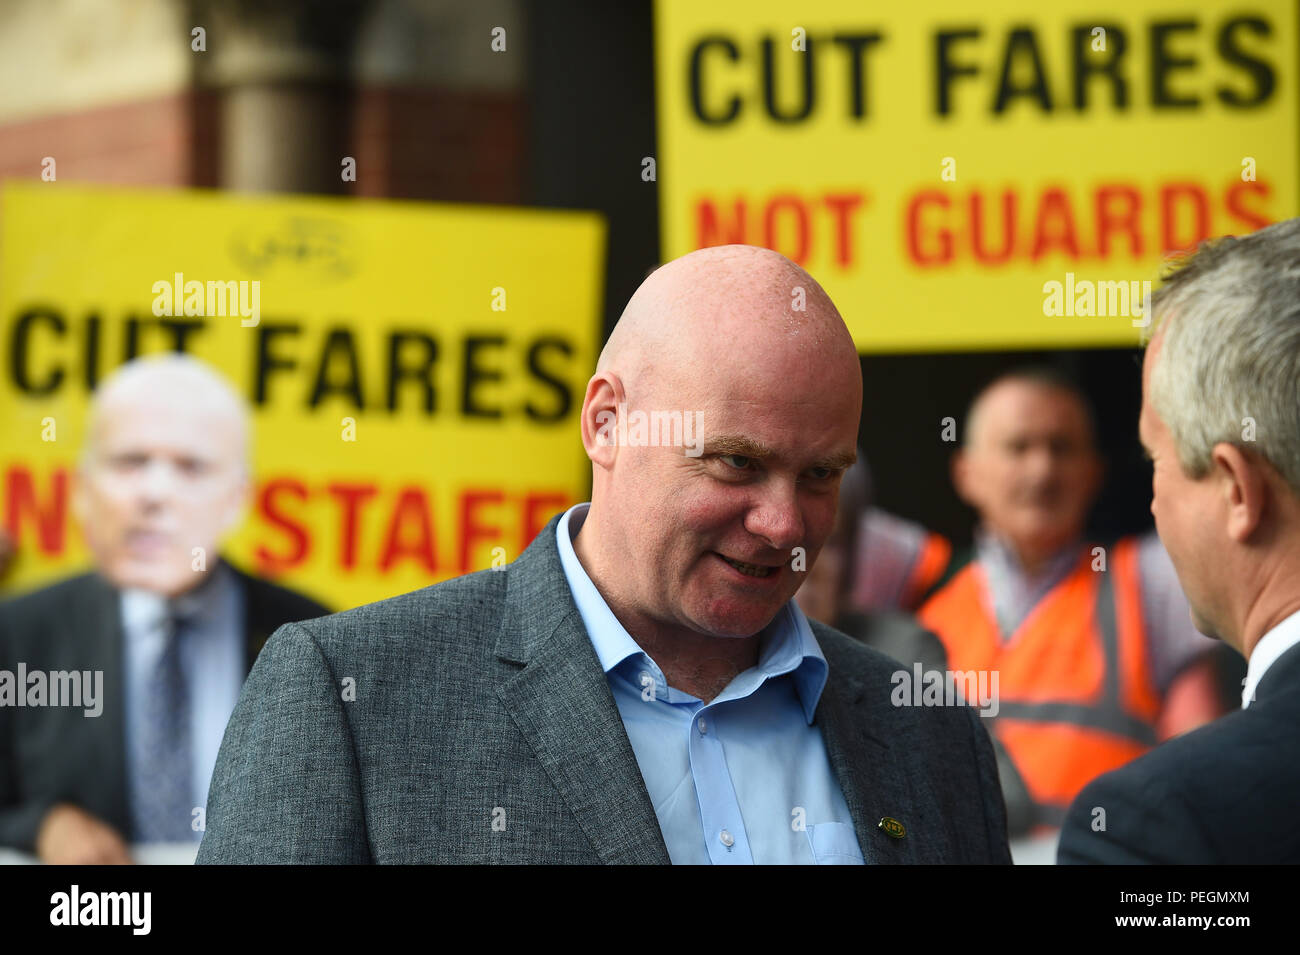 El transporte ferroviario, marítimo y europea (RMT) Secretario general adjunto senior Steve Hedley habla a la prensa durante una protesta por billetes de tren fuera de la estación de King's Cross en Londres. Foto de stock